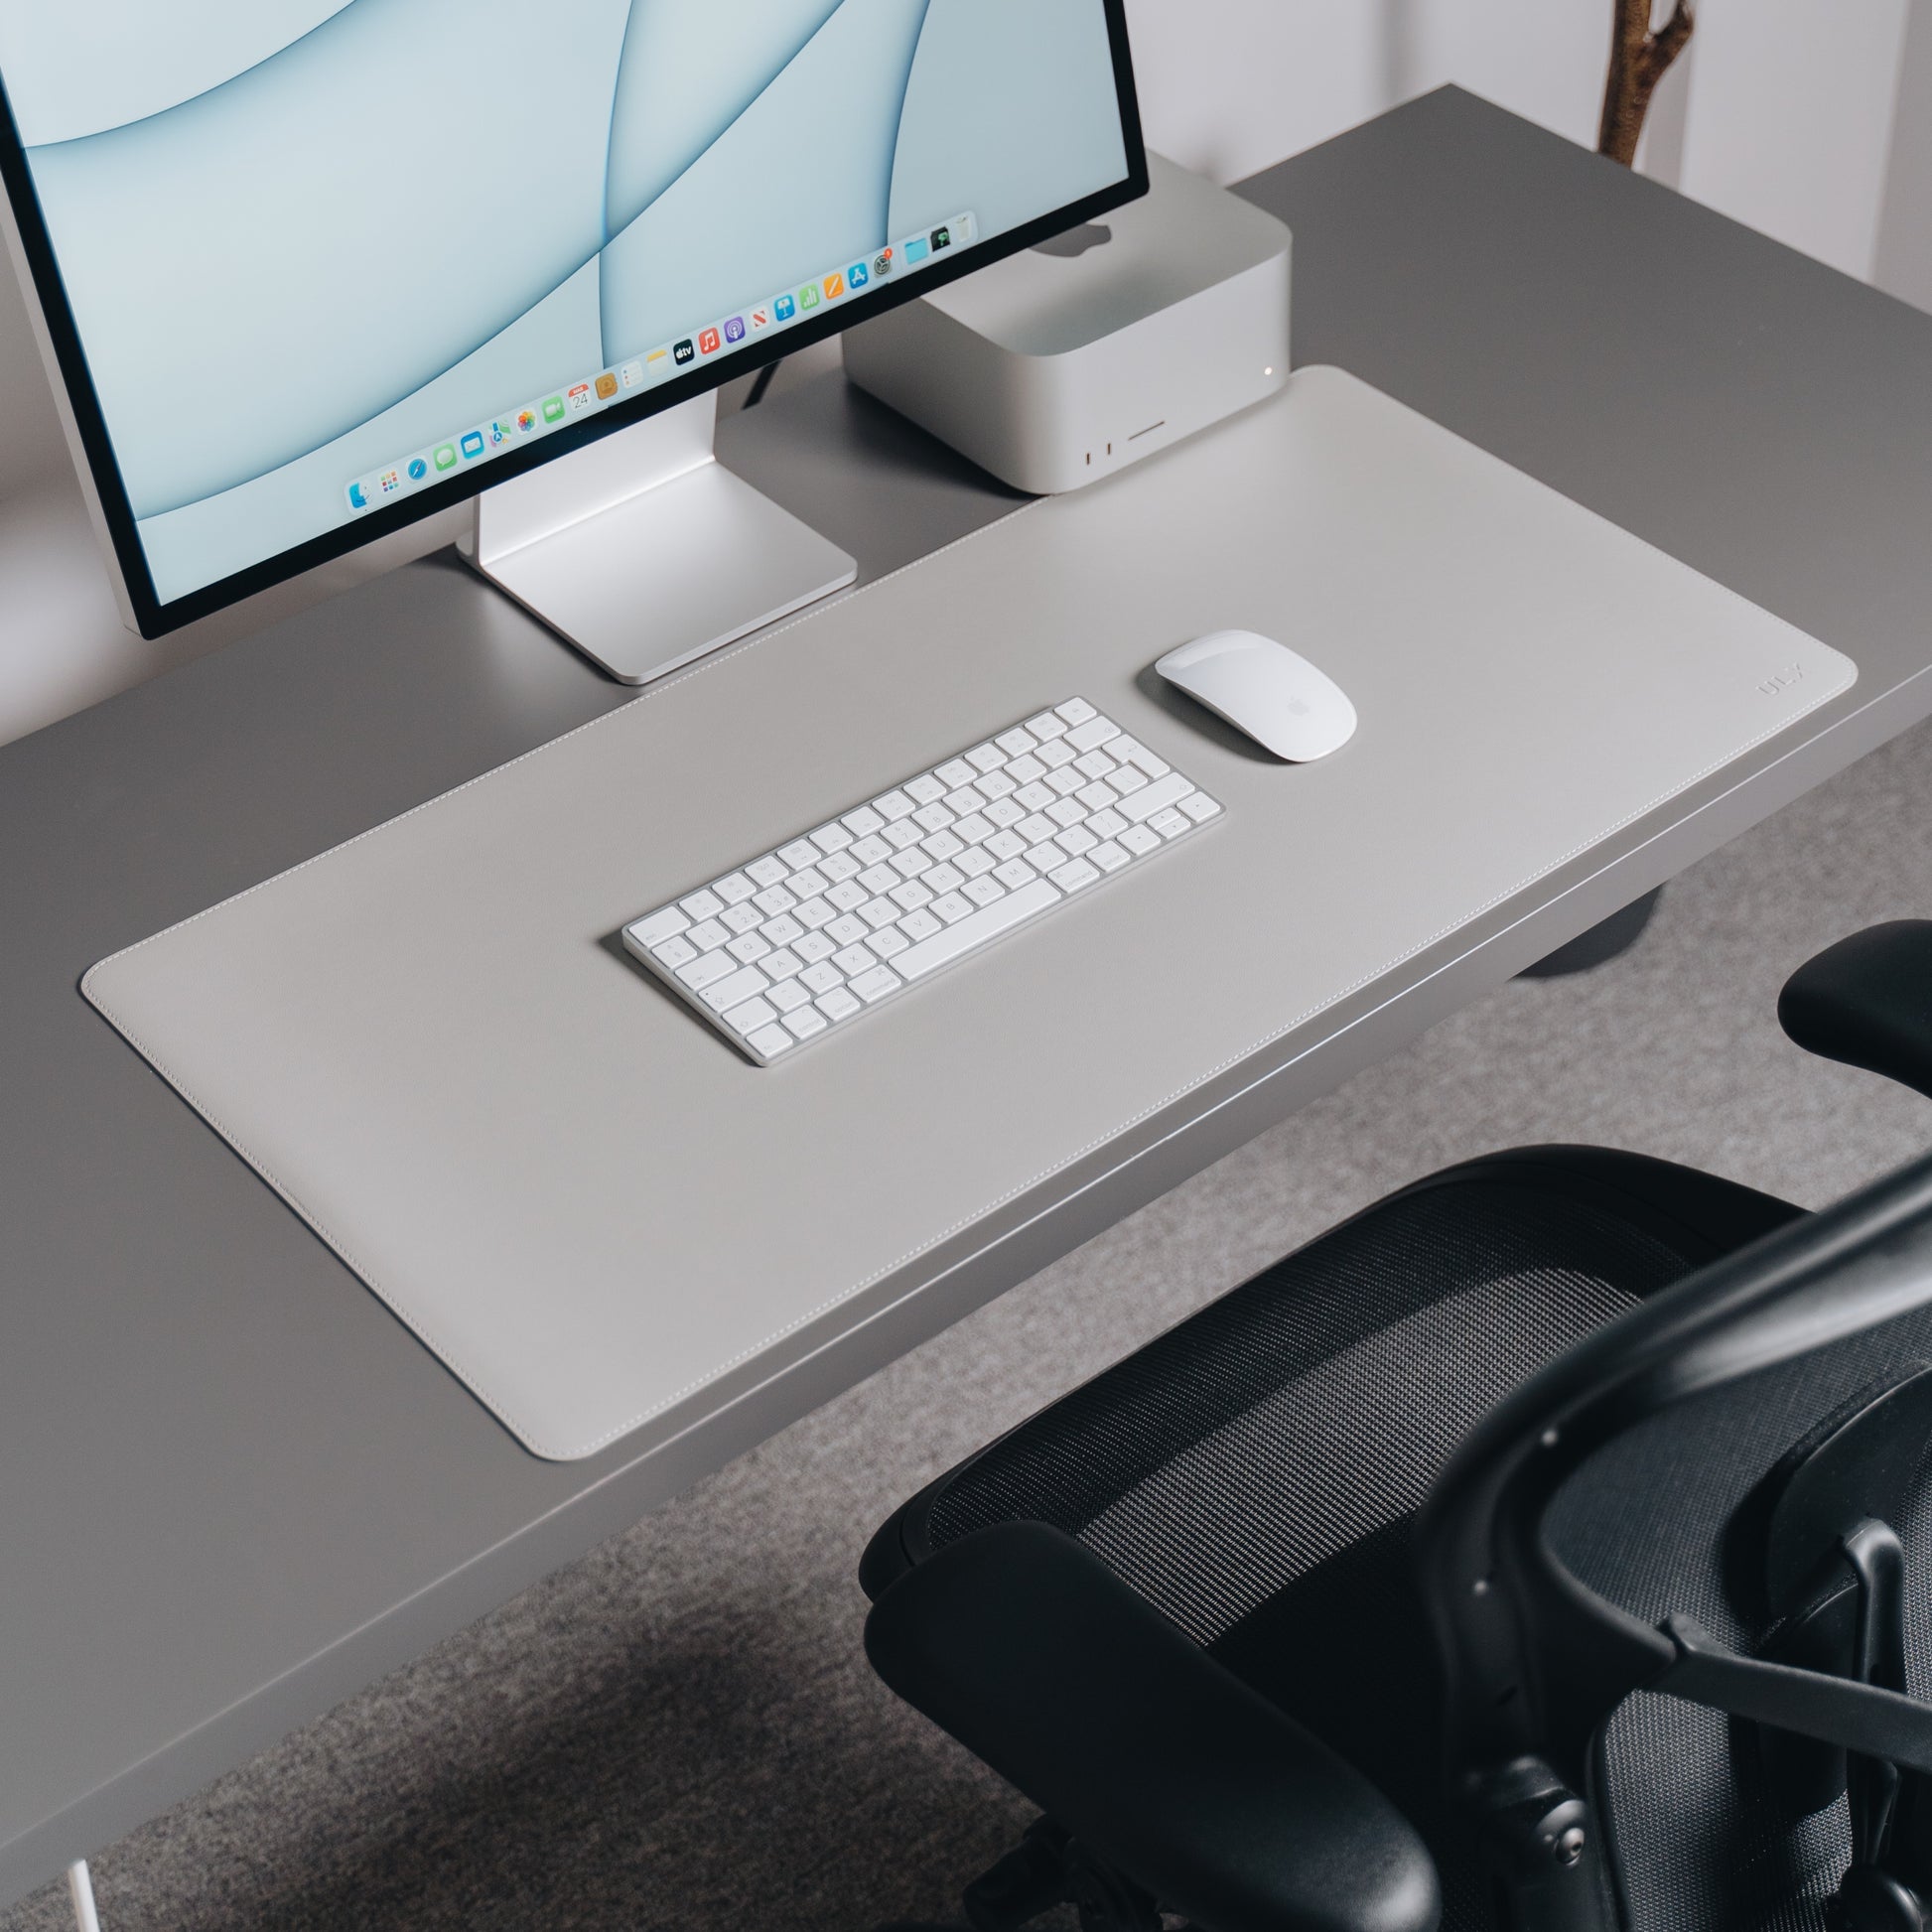 Why Should I Use a Desk Mat? – The Desk Mat